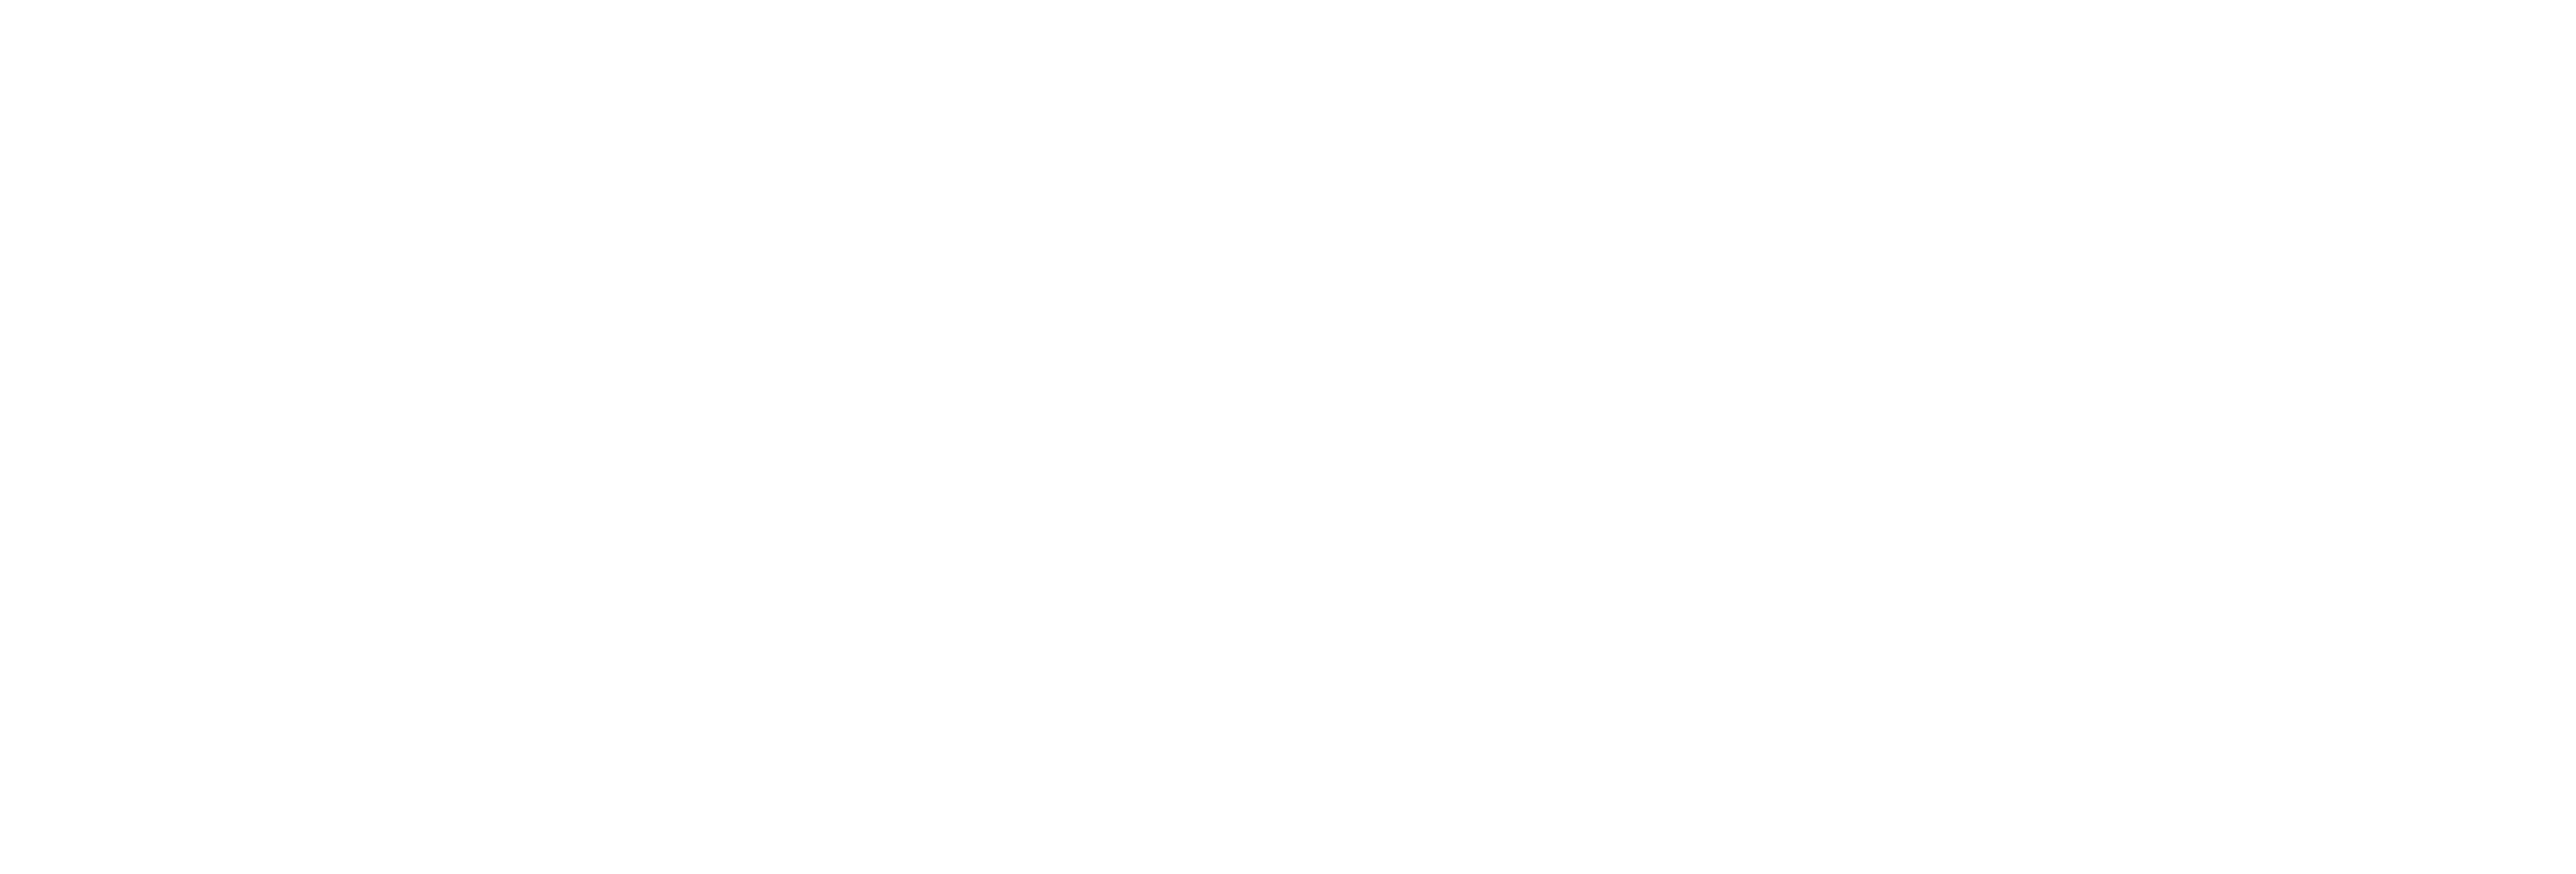 UCW logo (white)